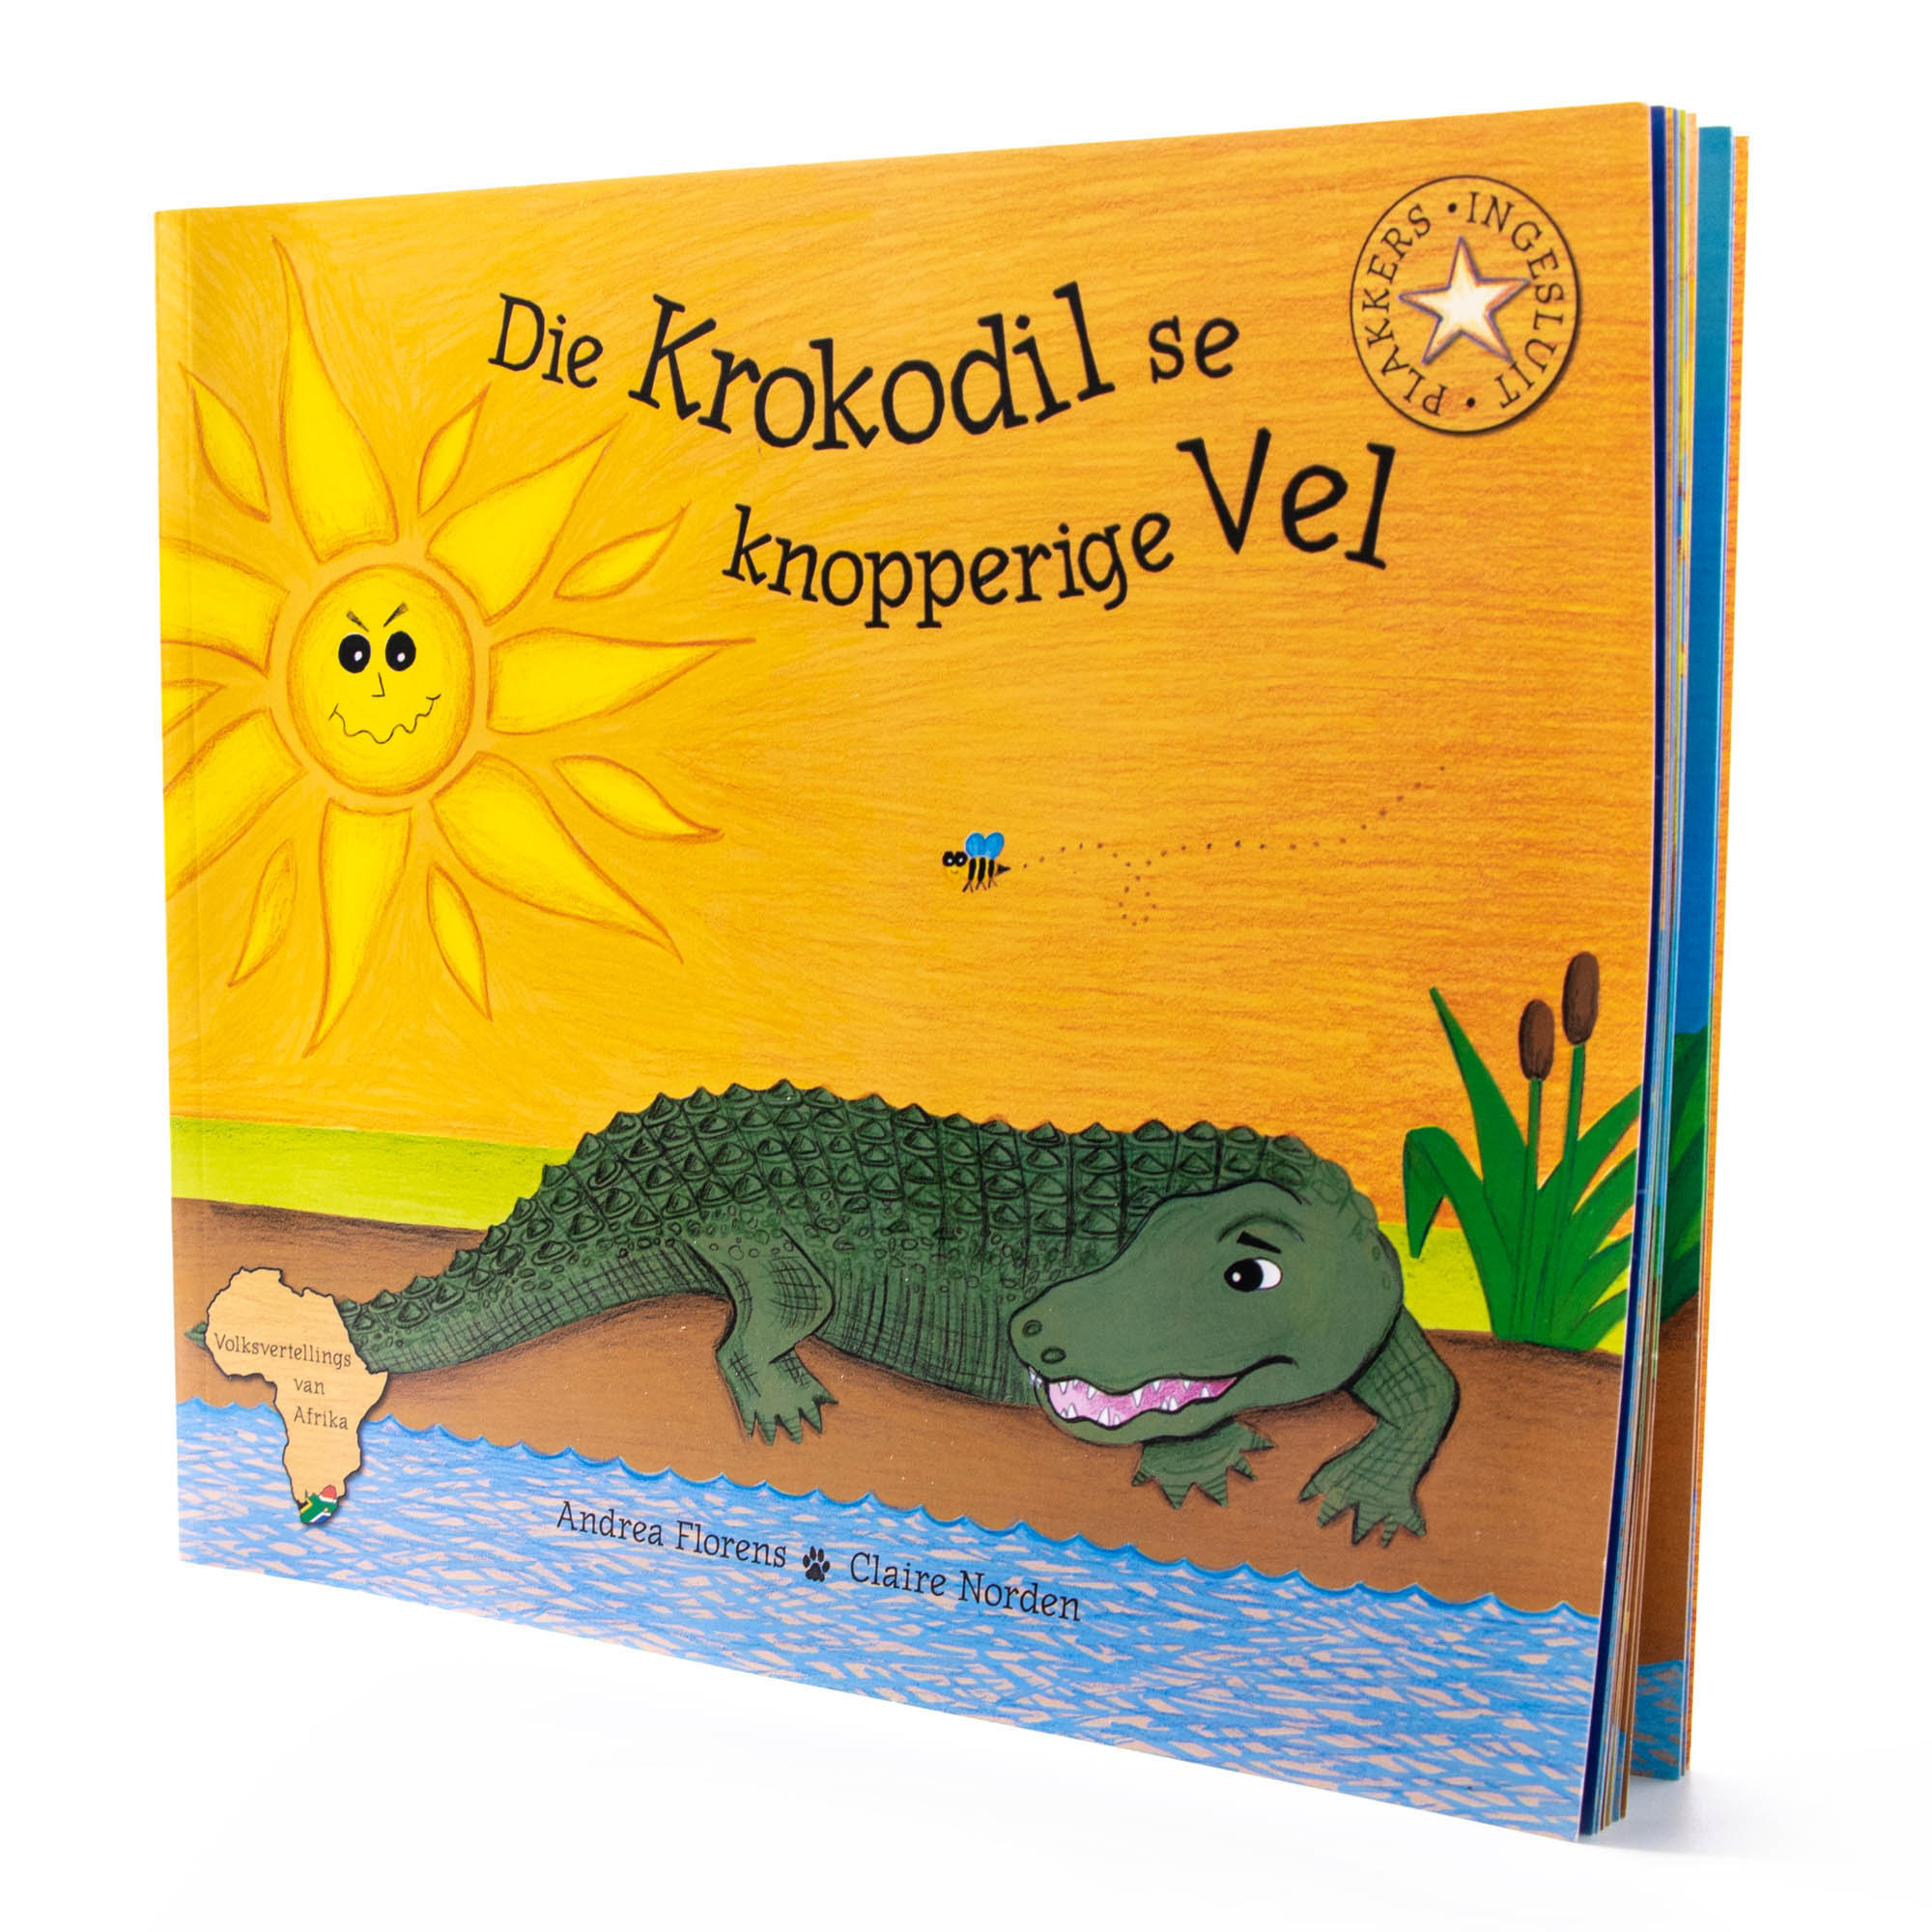 African Folklore Stories Die Krokodil se knopperige Vel Afrikaans Story Book